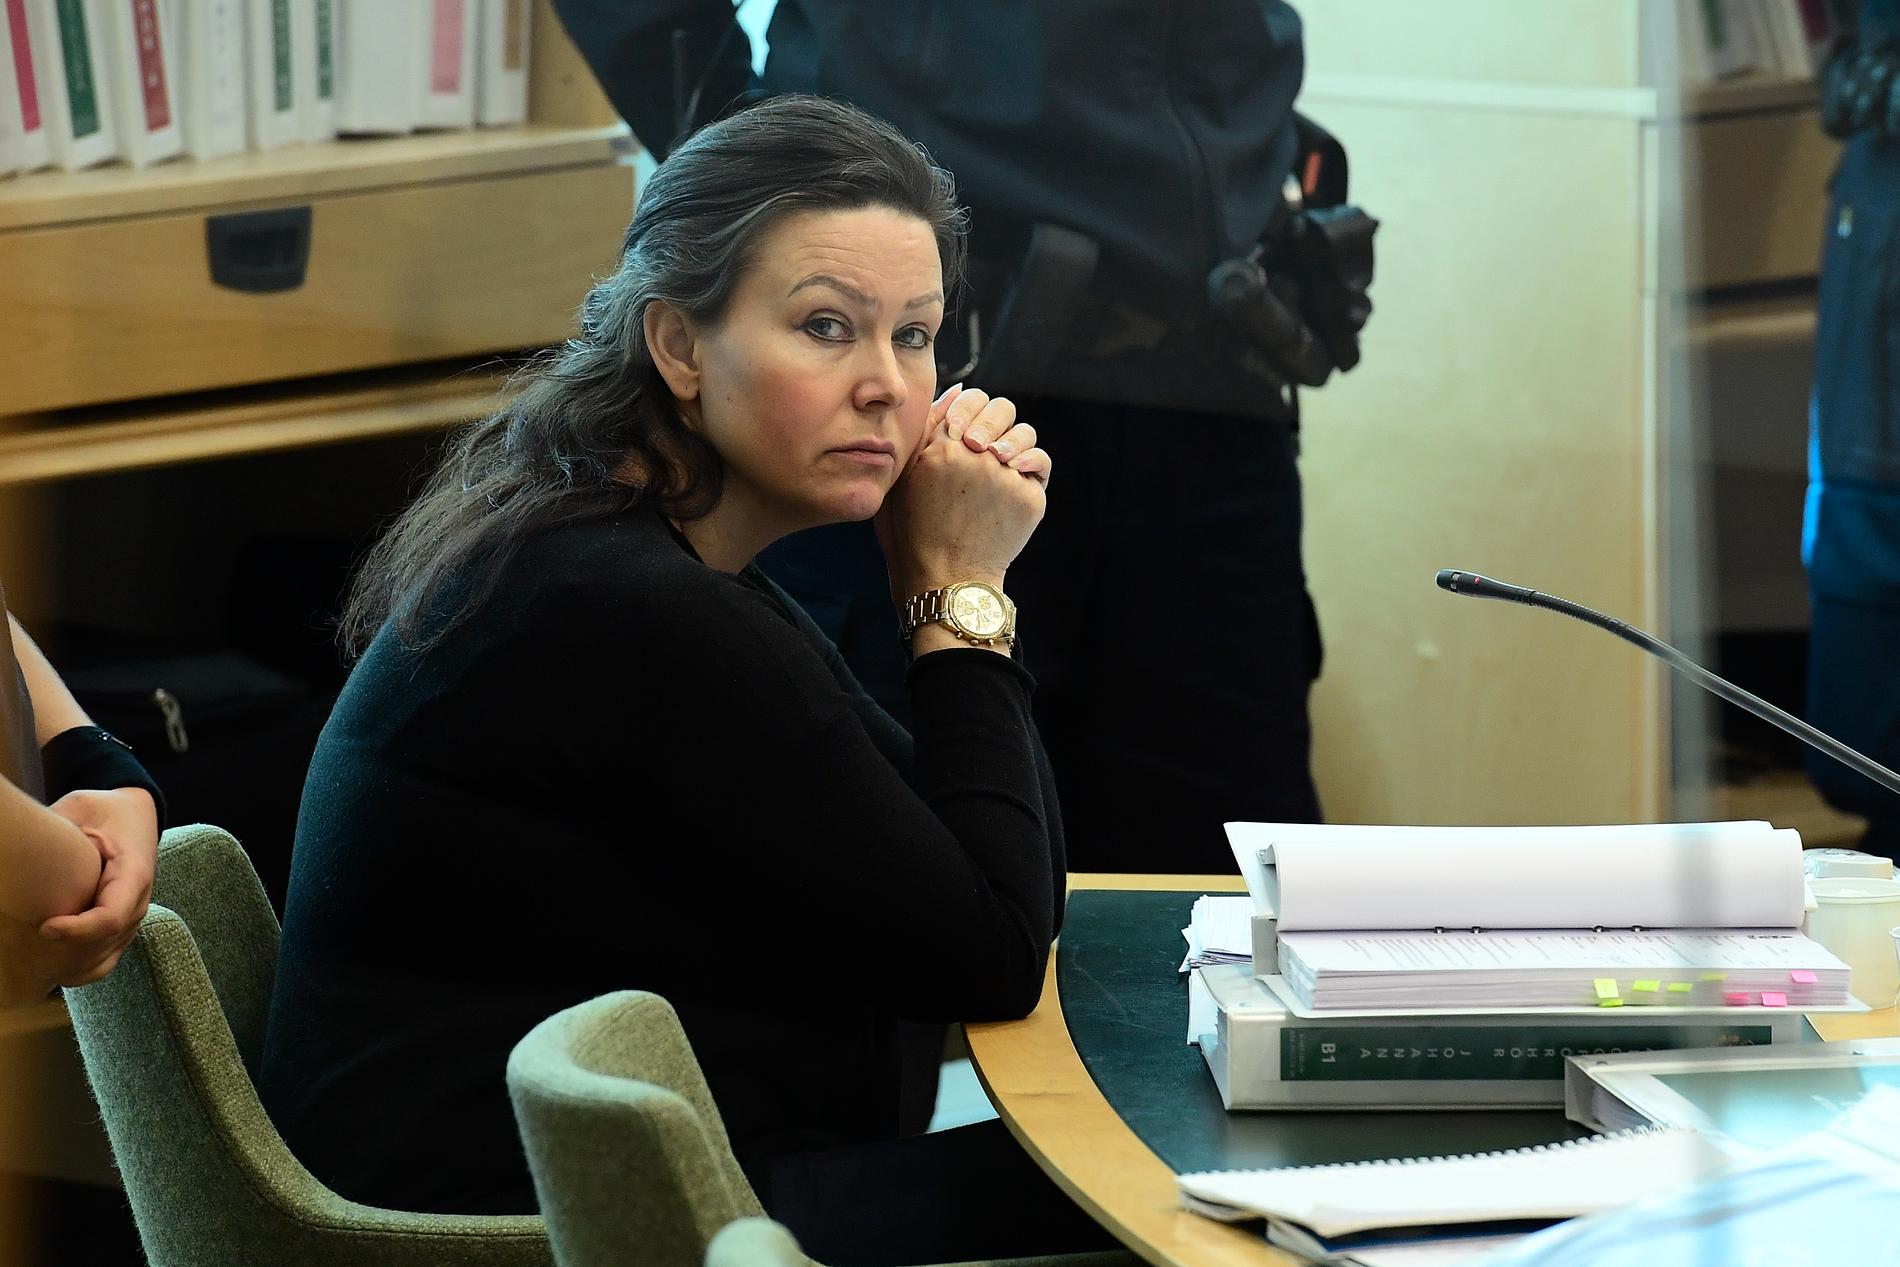 Idén till ”Svenska fall” kom med ”Sommarstugemordet” i Arboga,  där Johanna Möller dömdes till livstids fängelse för ansiftan till mordet på sin pappa.